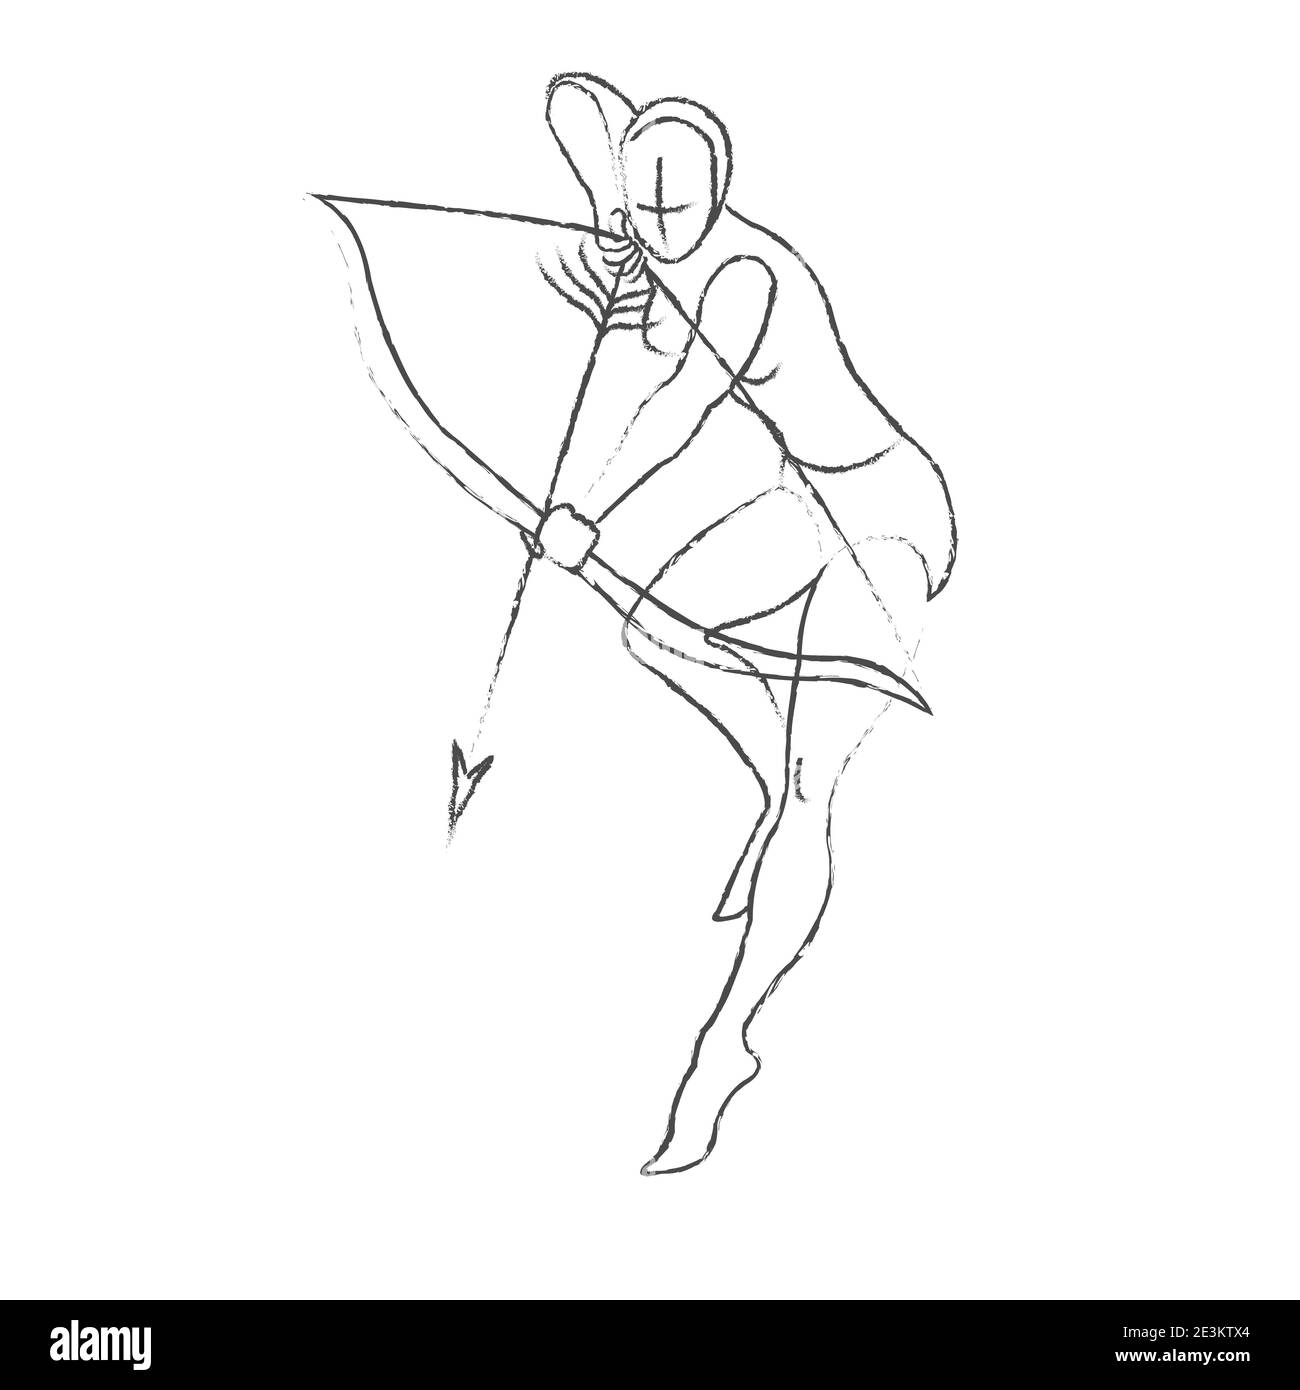 Un croquis de la silhouette d'une fille archer dans une posture dynamique avec un arc et une flèche. Archer mince dans le style charbon. Dessin du mouvement d'un fantasme Illustration de Vecteur